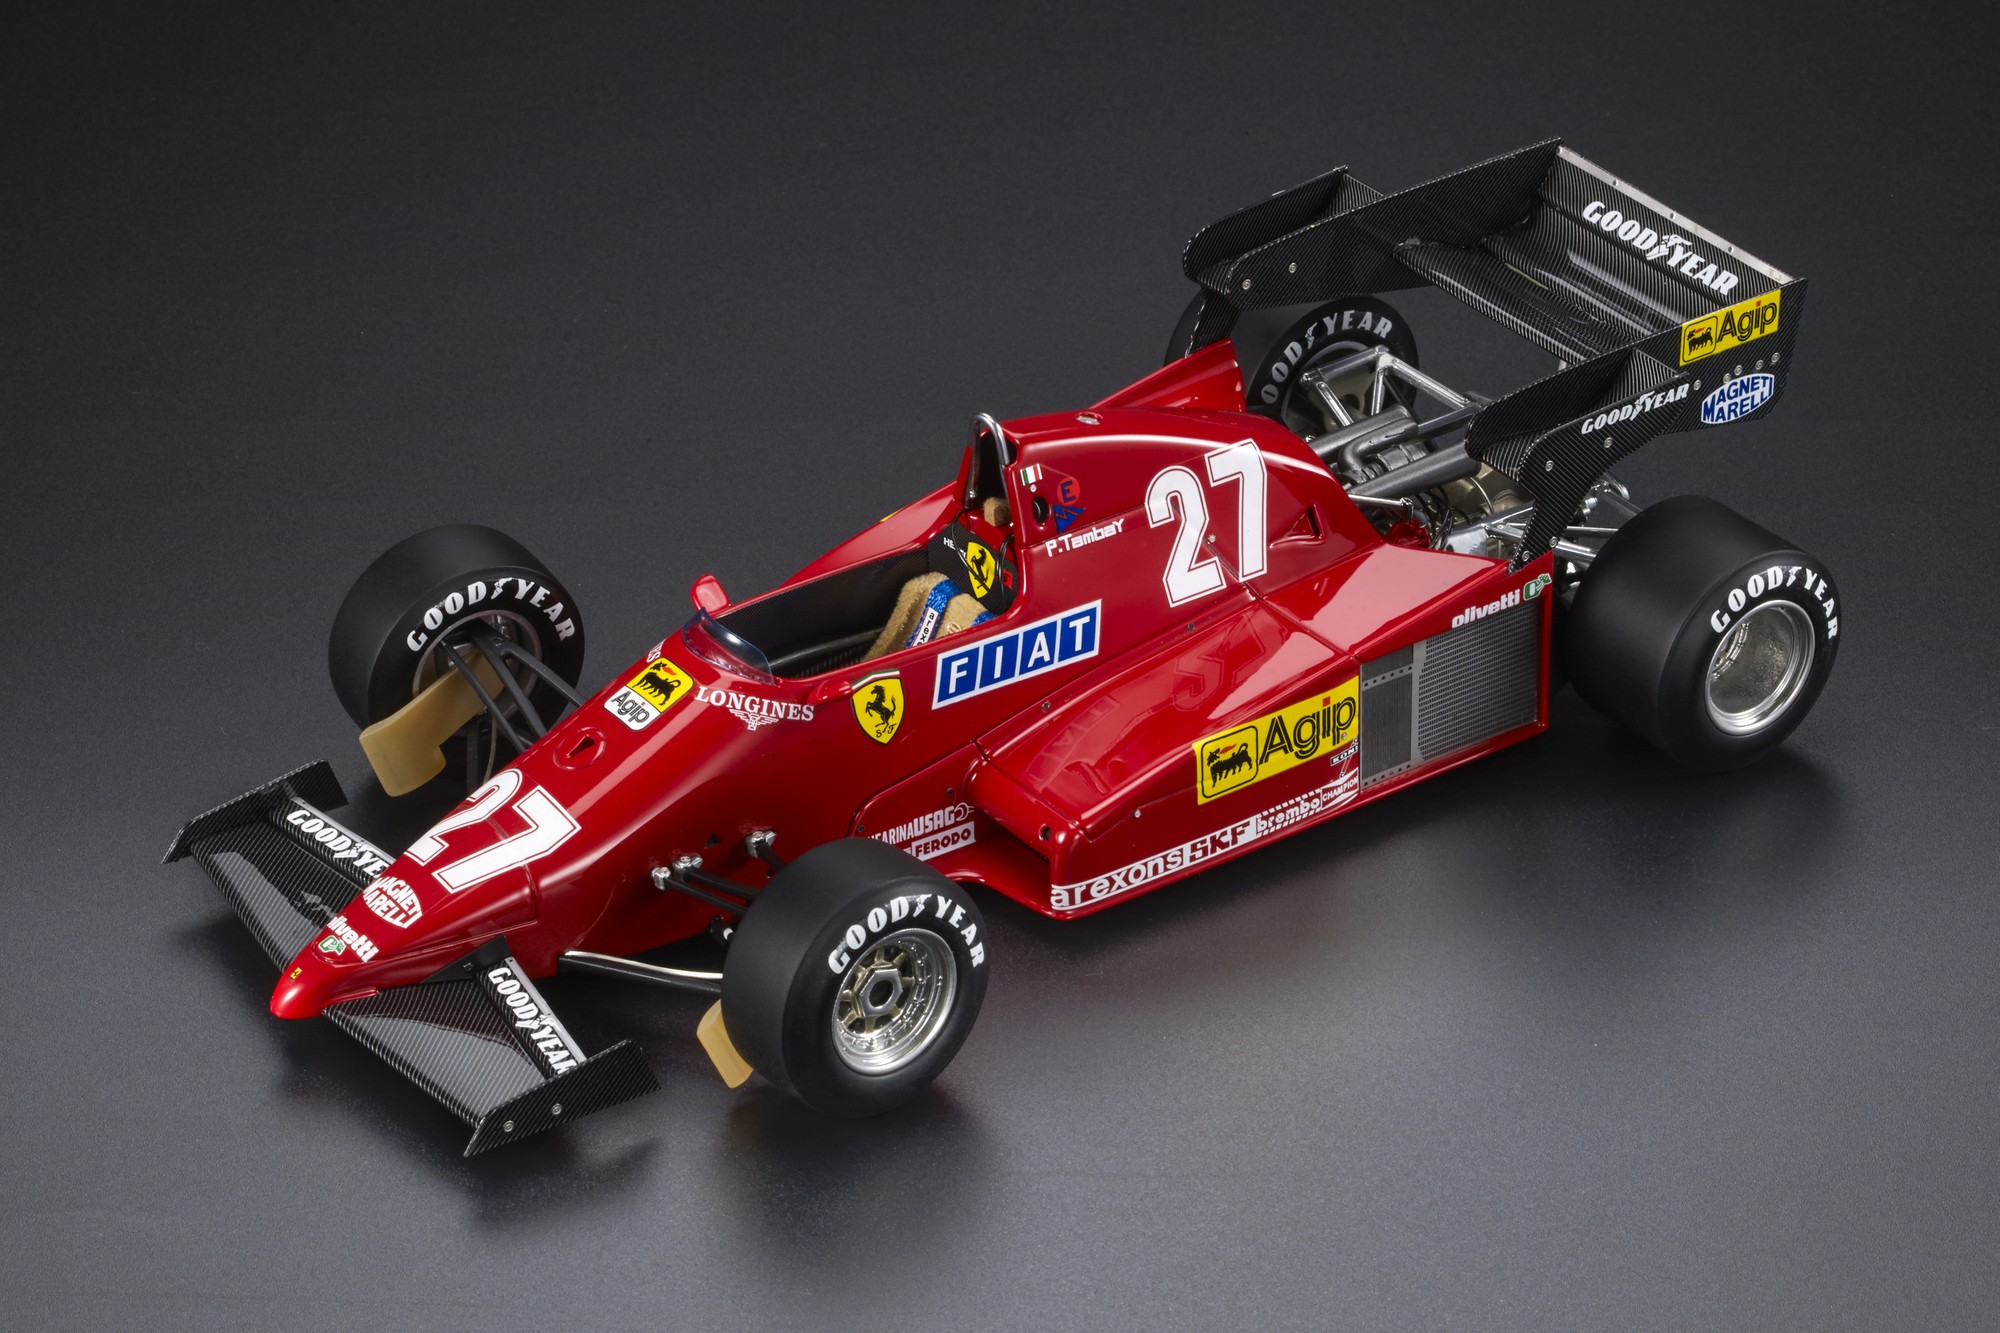 Ferrari F1 126 C3 #27 1983 GP REPLICAS GP096A